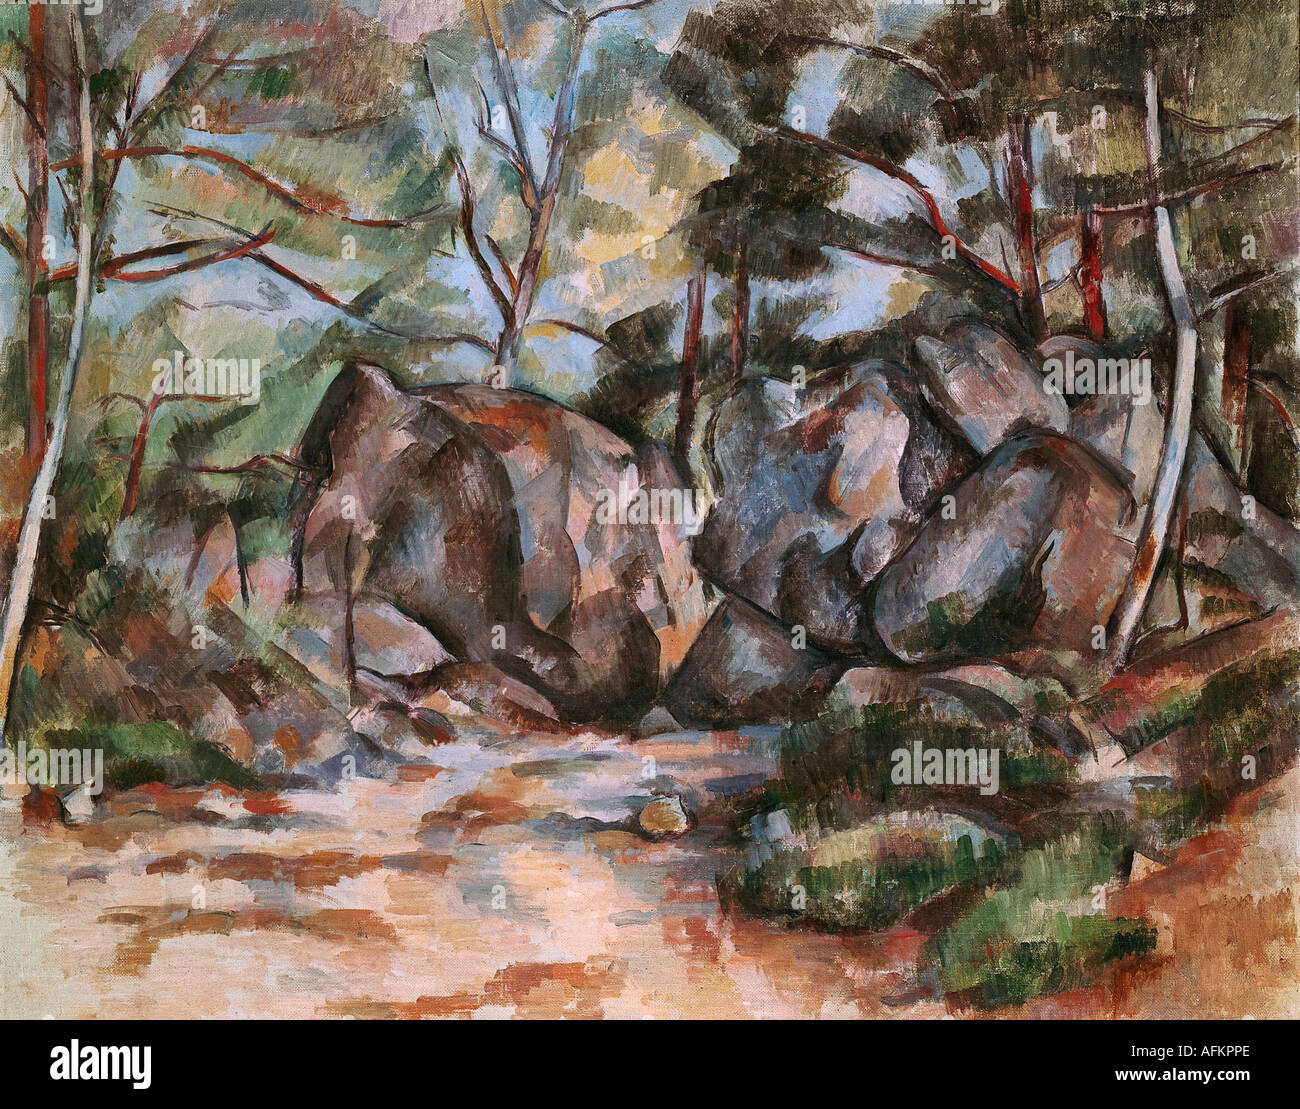 Bildende Kunst, Cezanne, Paul (1839-1906), Malerei, Forrest mit Felsbrocken, Kunsthaus Zürich, Französisch, Impressionismus, Fels, Felsen, n Stockfoto